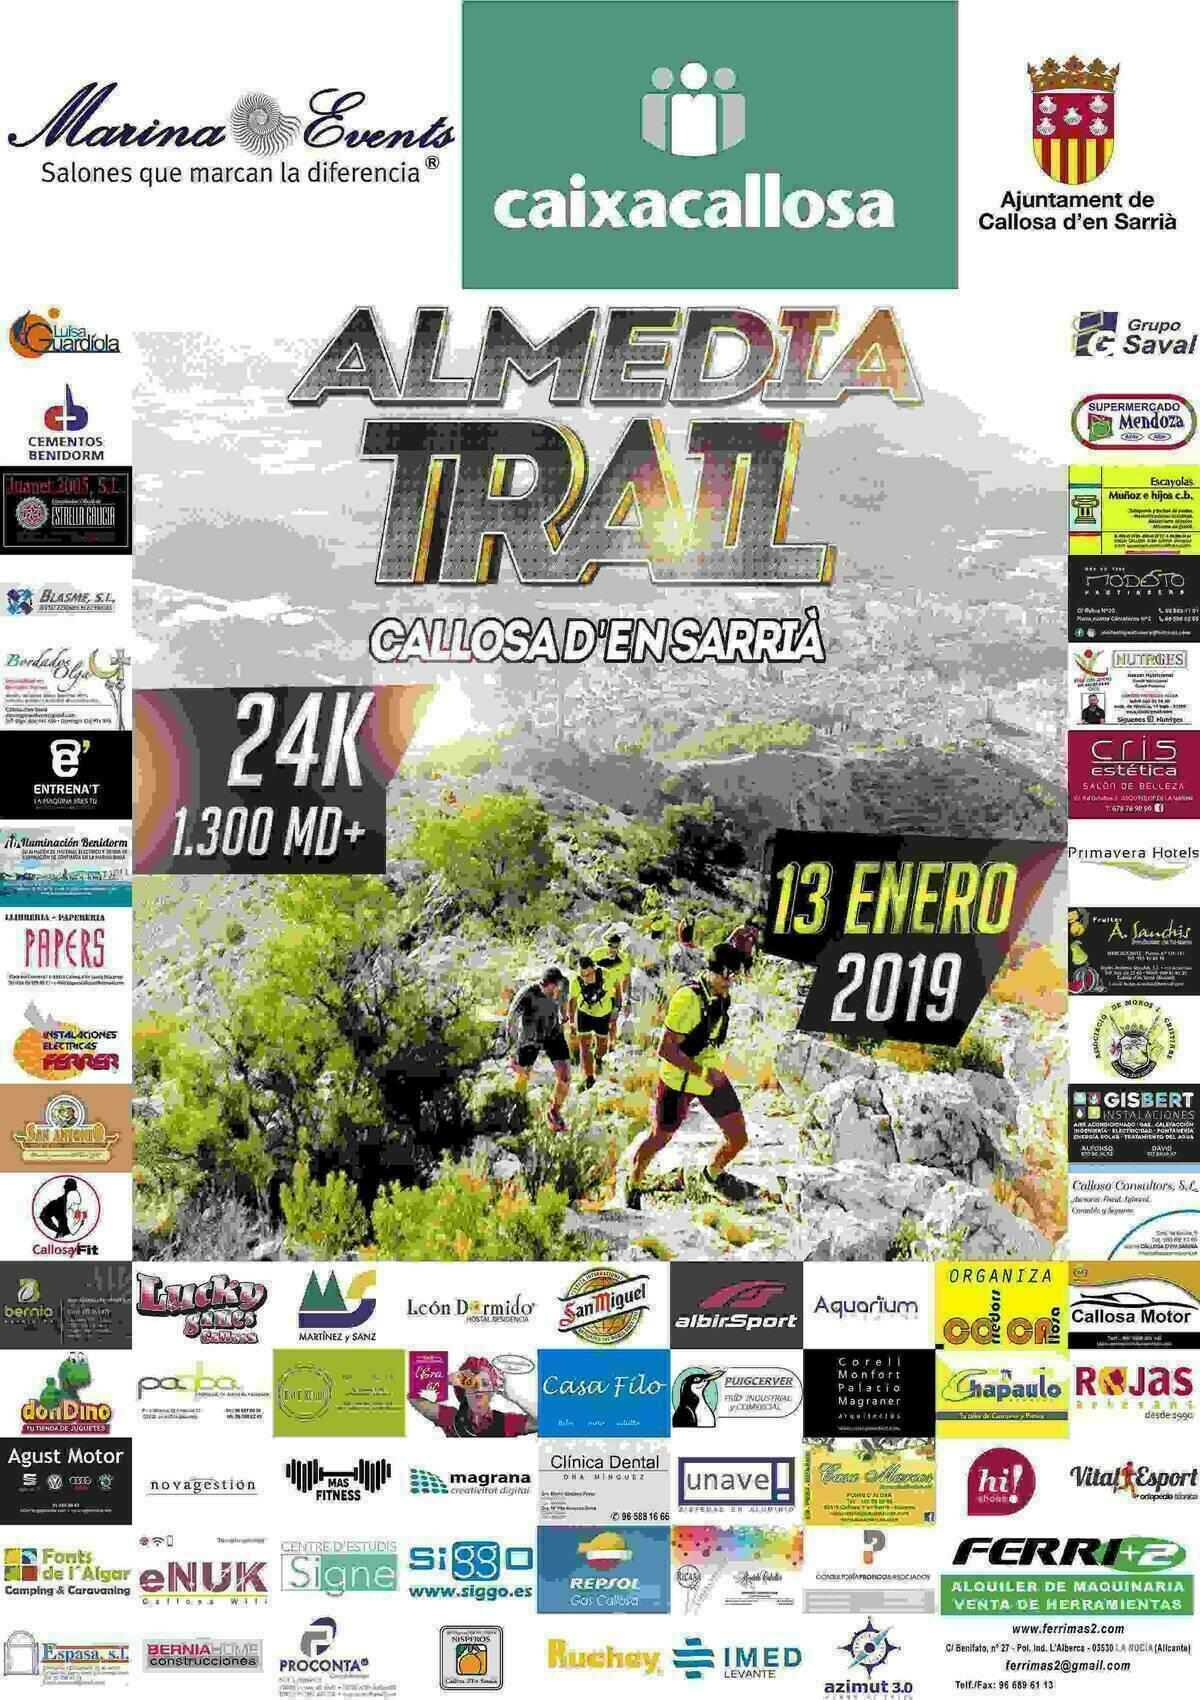 Callosa d’en Sarrià acoge este domingo el I Almedia Trail